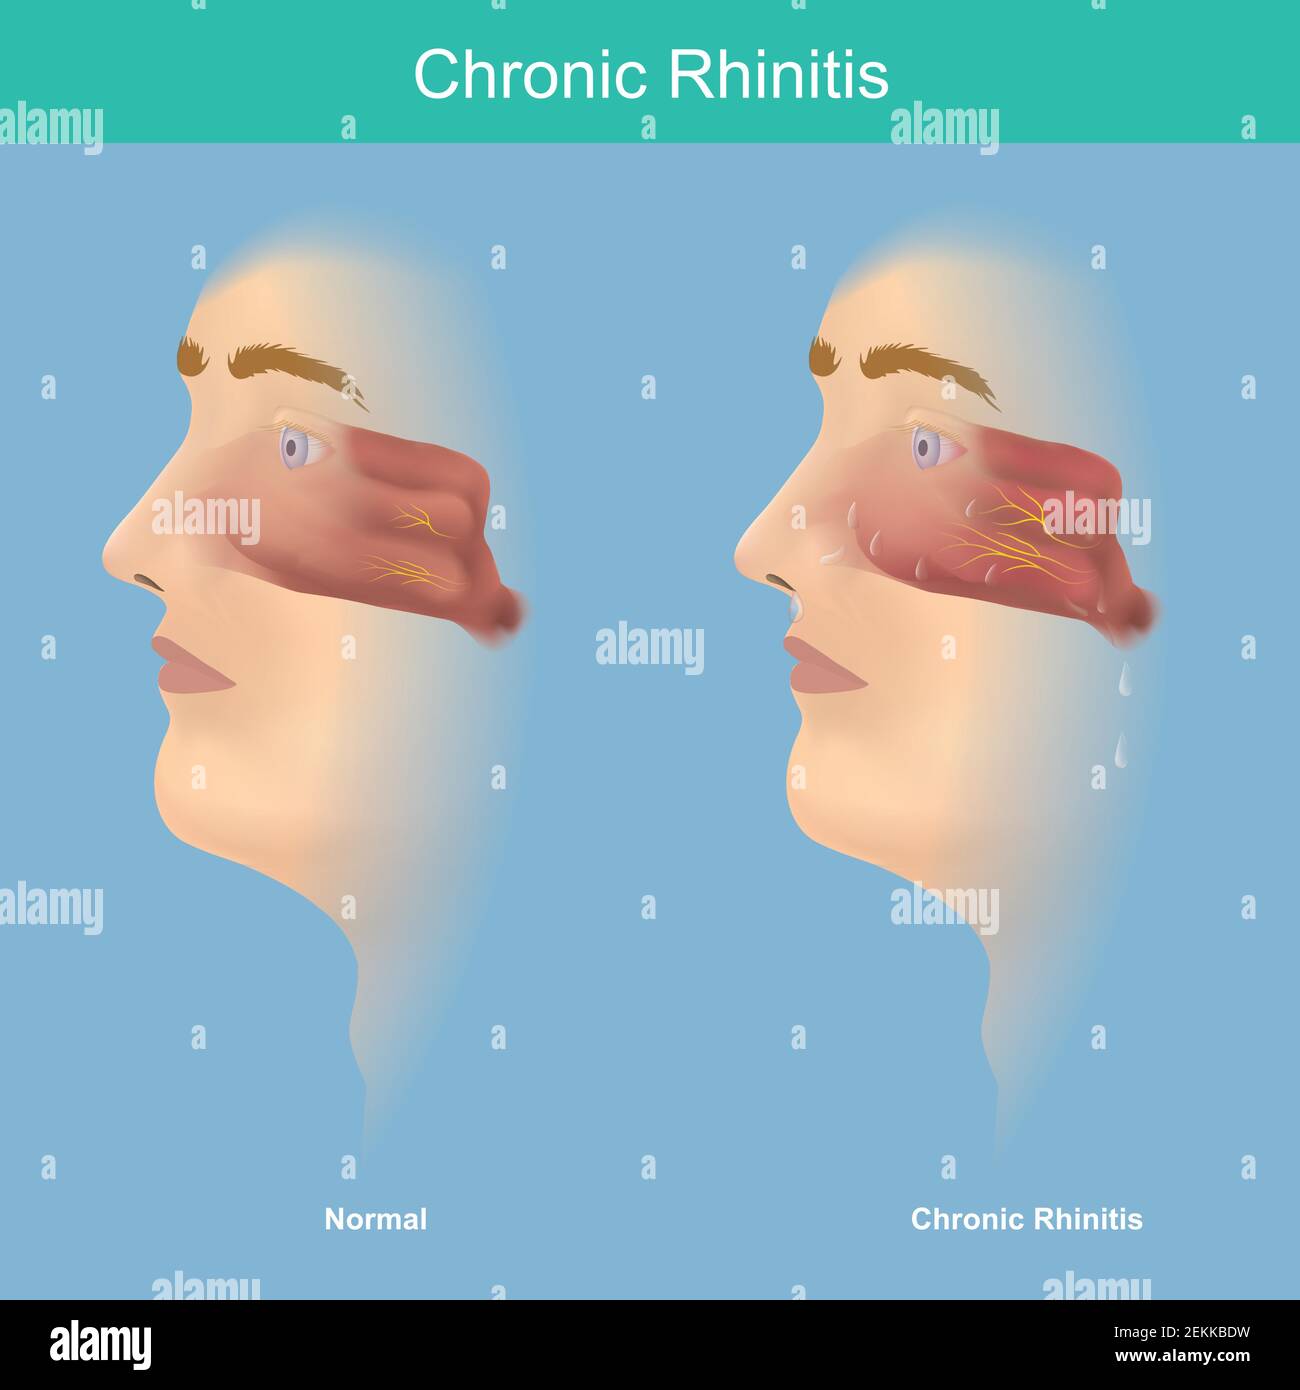 Chronische Rhinitis. Diese Illustration medizinische Verwendung für  Vergleich zu erklären chronische Rhinitis Symptome haben Schleim in der Nase  und Rachen Stock-Vektorgrafik - Alamy